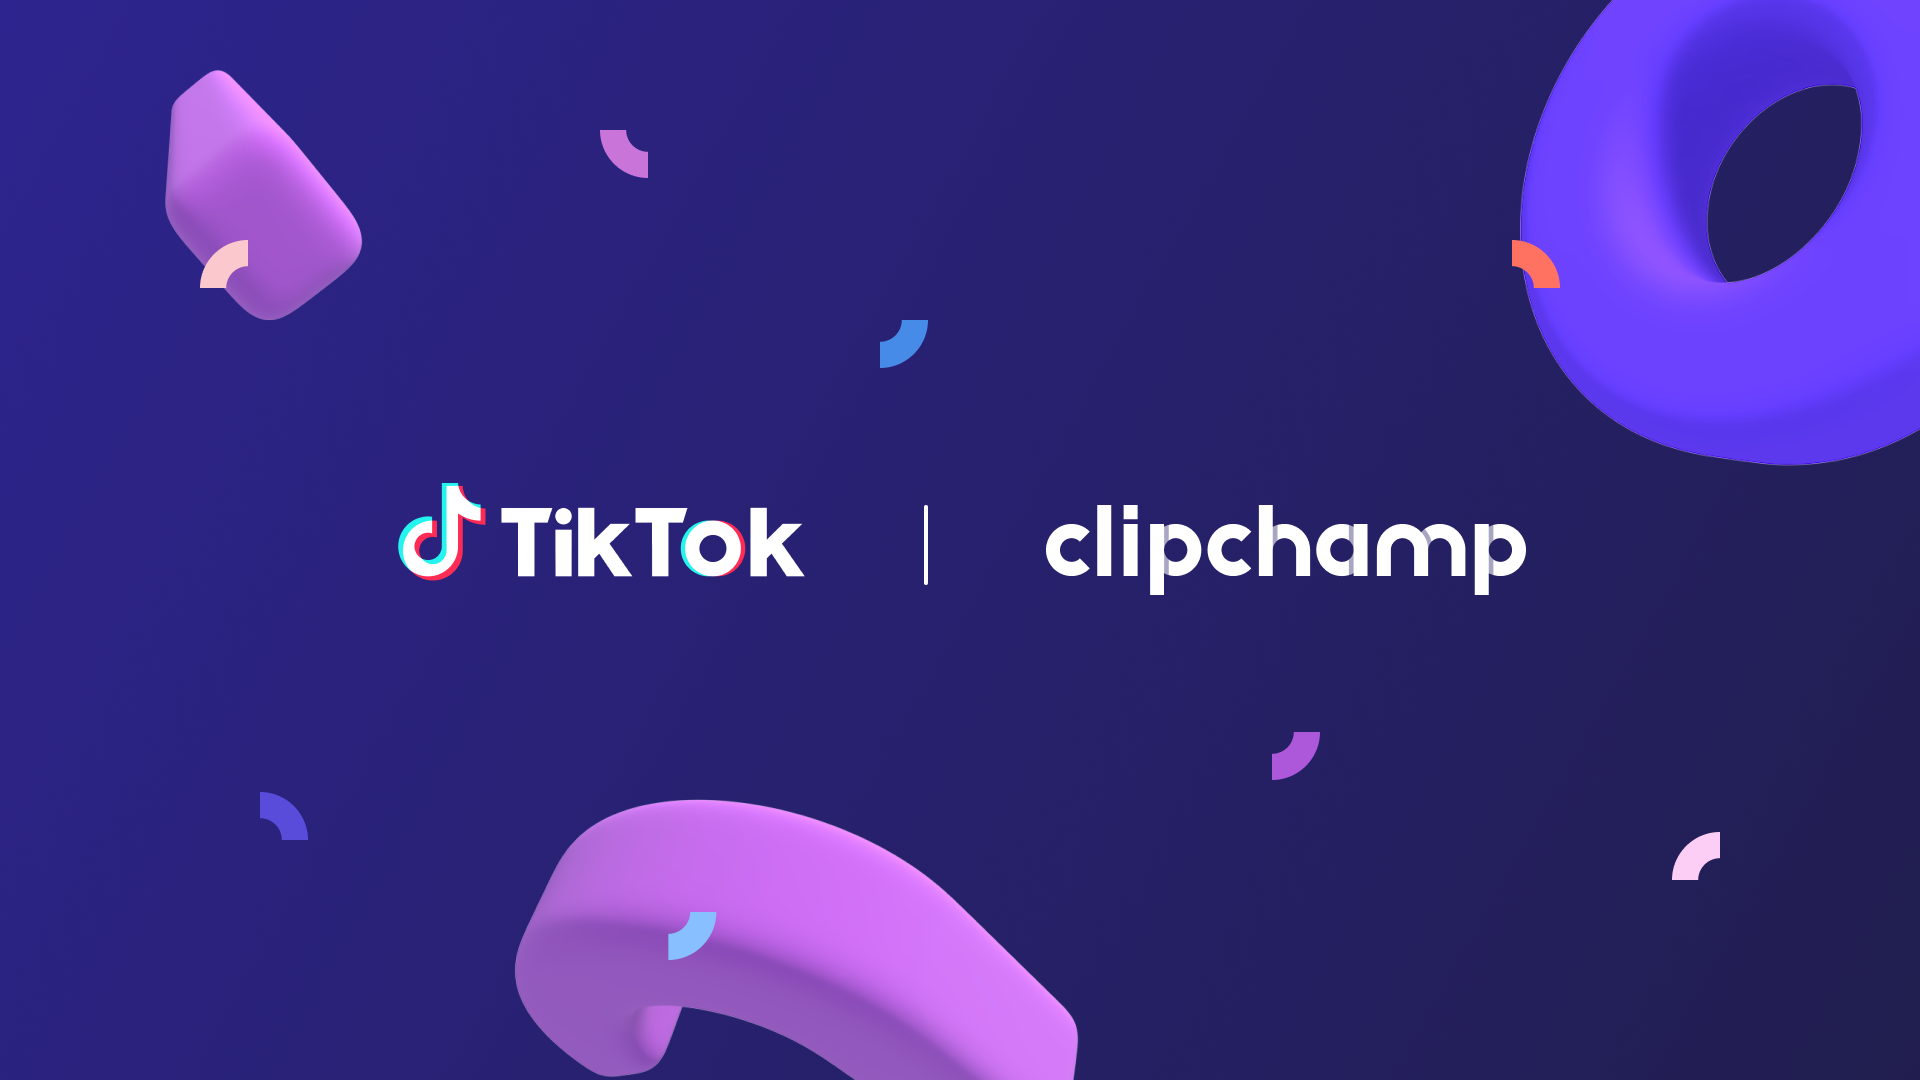 Logotipos do TikTok e do Clipchamp.